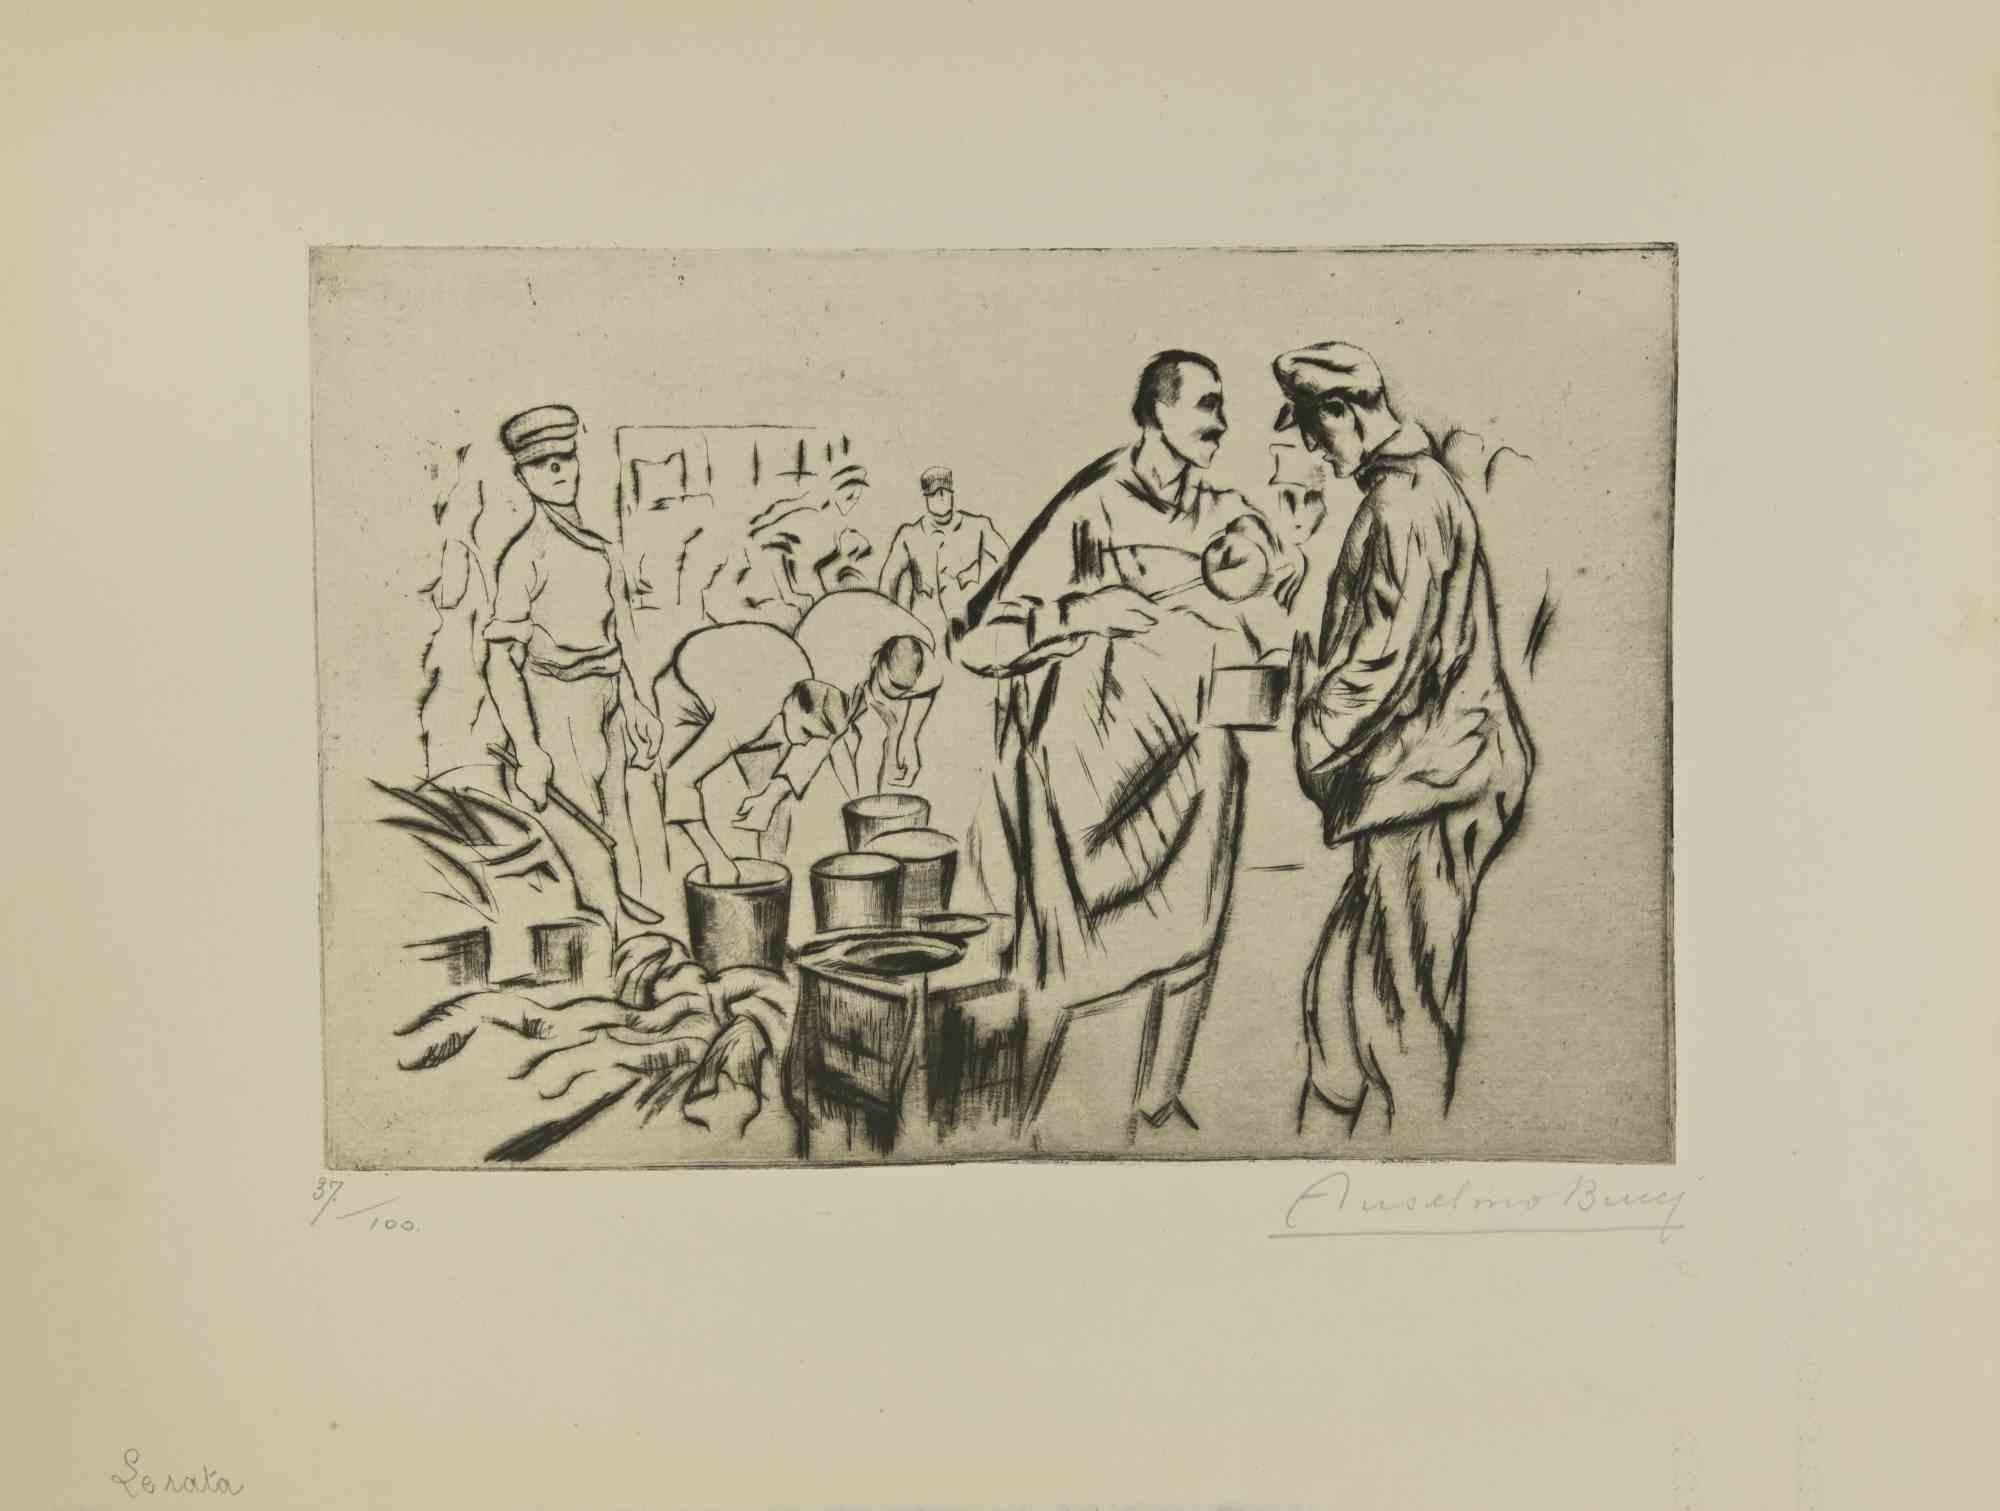  La Soirée - aus "Le Croquis du Front Italien"  ist eine Radierung und Kaltnadelradierung des italienischen Künstlers Anselmo Bucci aus dem Jahr 1917.

Handsigniert am rechten Rand. Auflage n. 37/100 Exemplare auf Hollande-Papier. Aus der